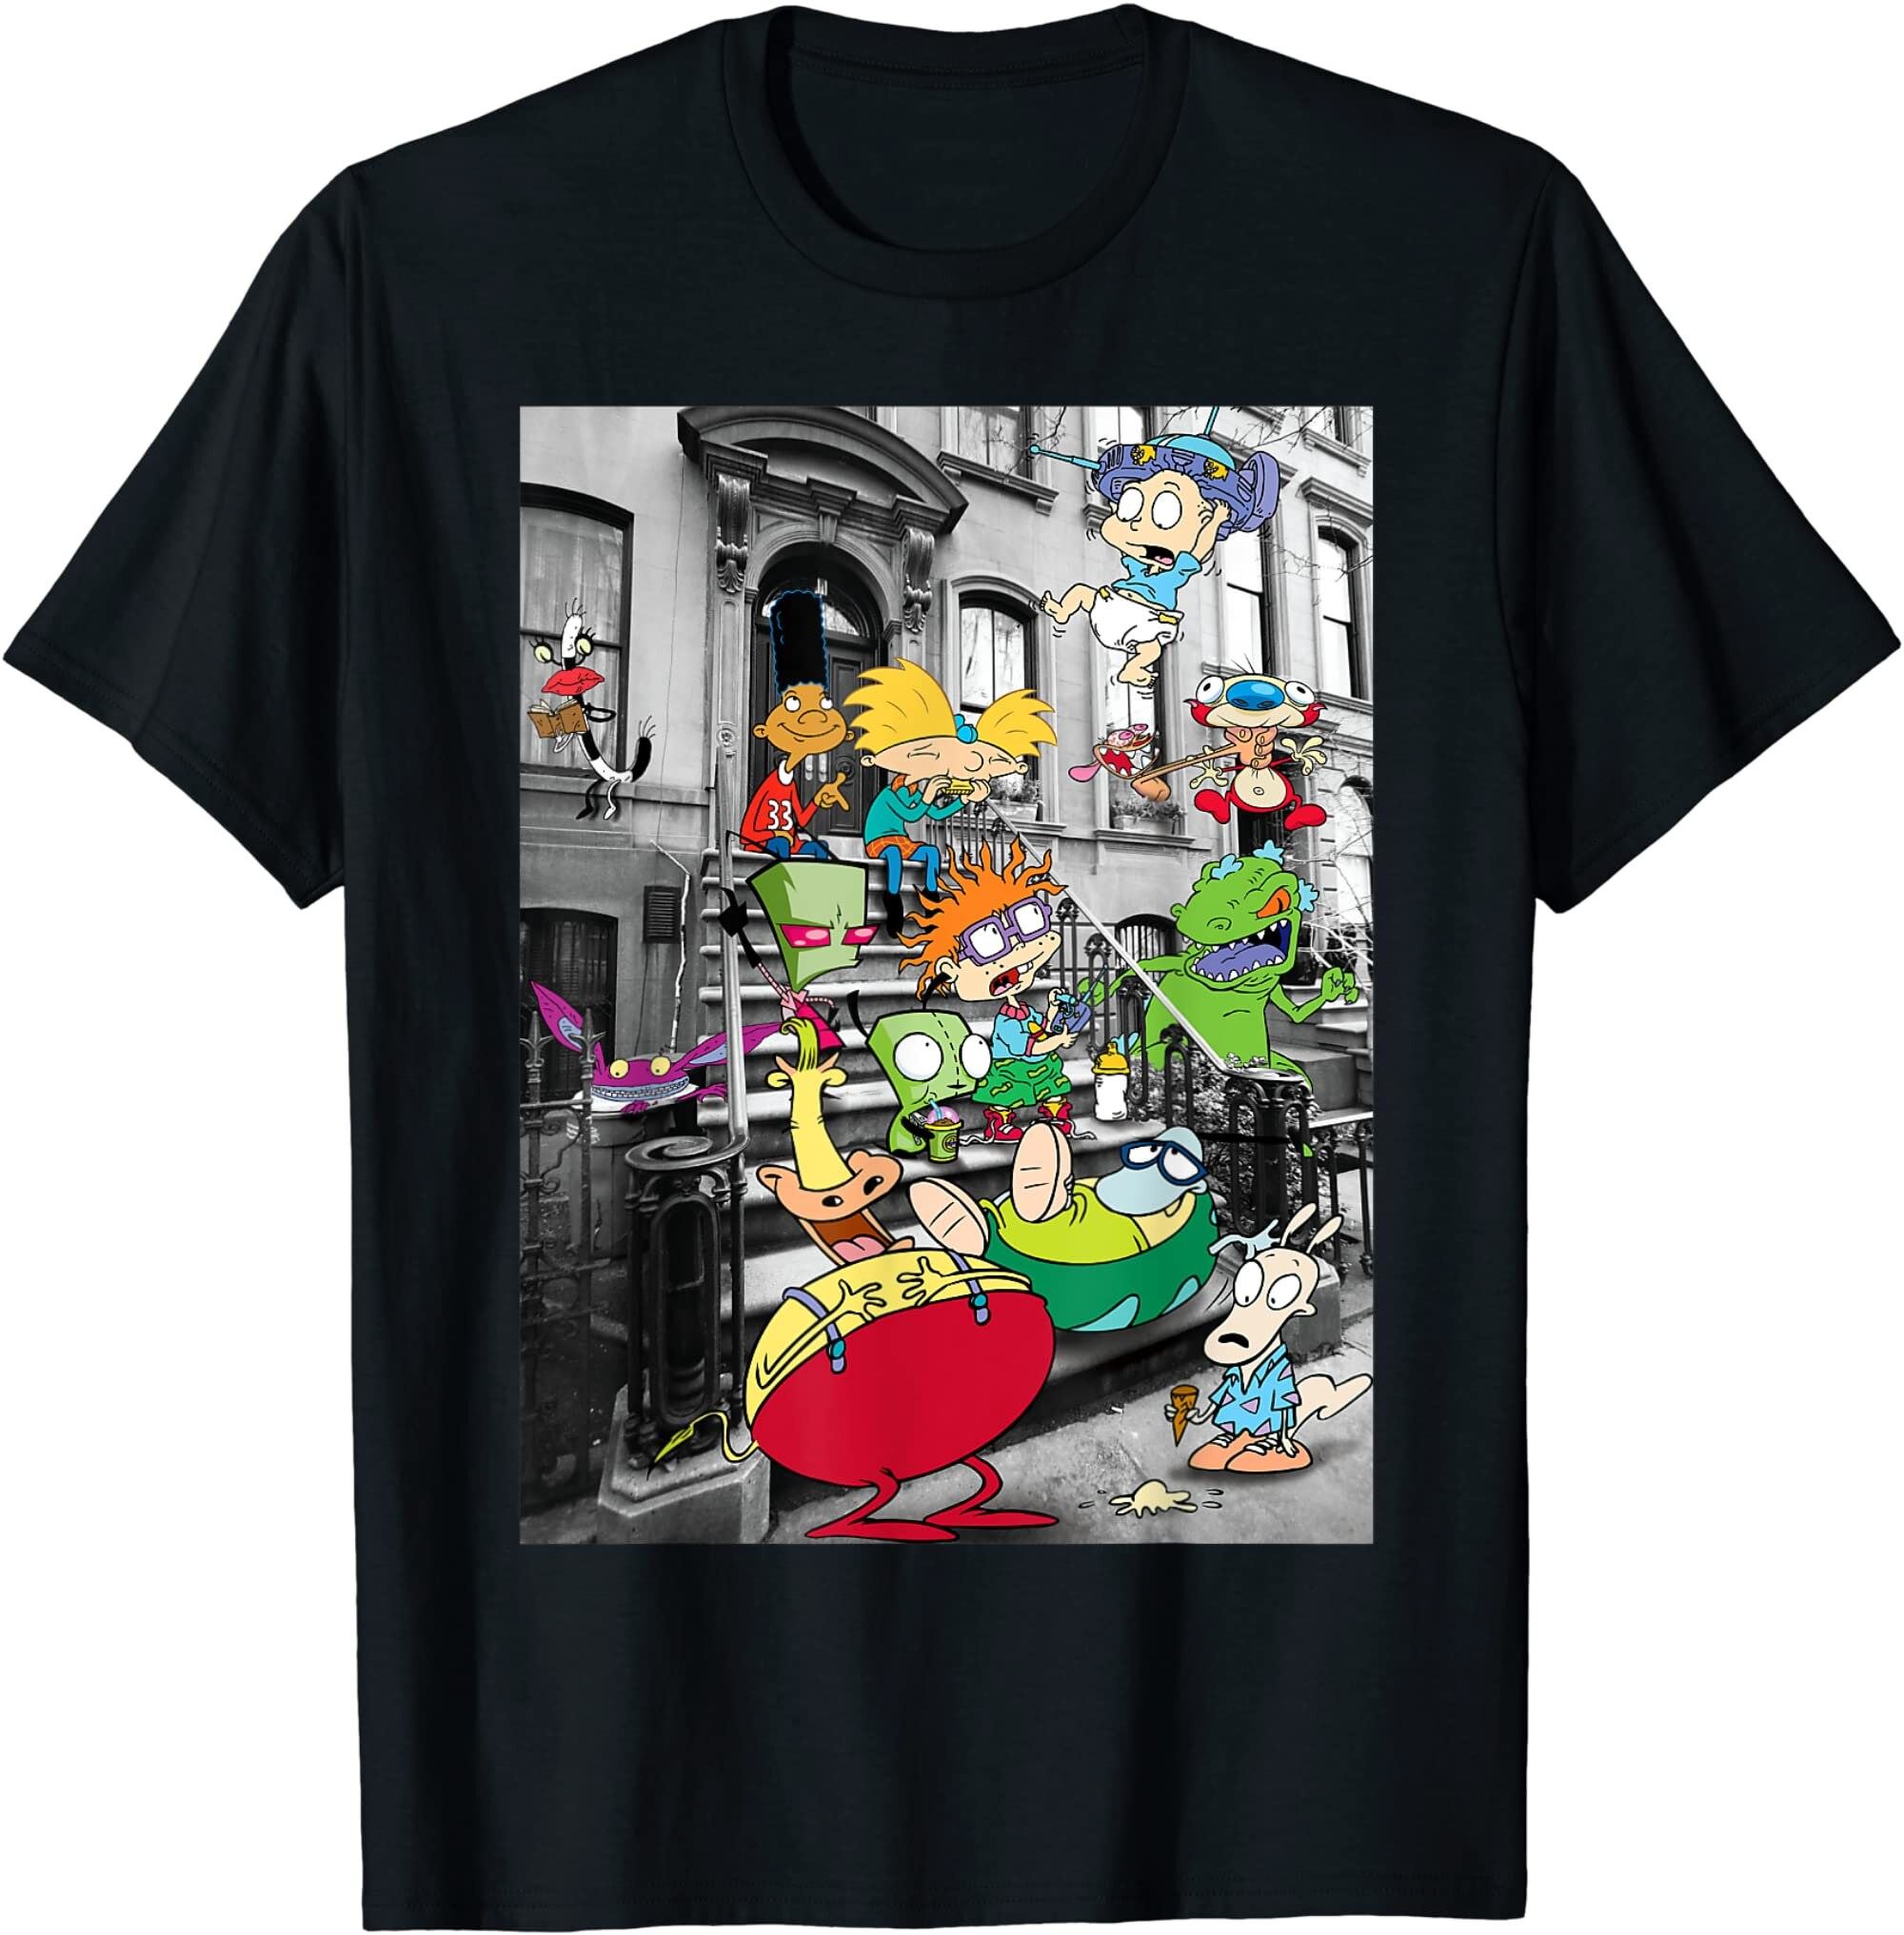 Nickelodeon Shirt Nickelodeon Classic Nicktoons Hanging On Stoop Shirt Cartoon Shirt Nicktoons Shirtclassic Movie Shirtparty Shirt Tm29